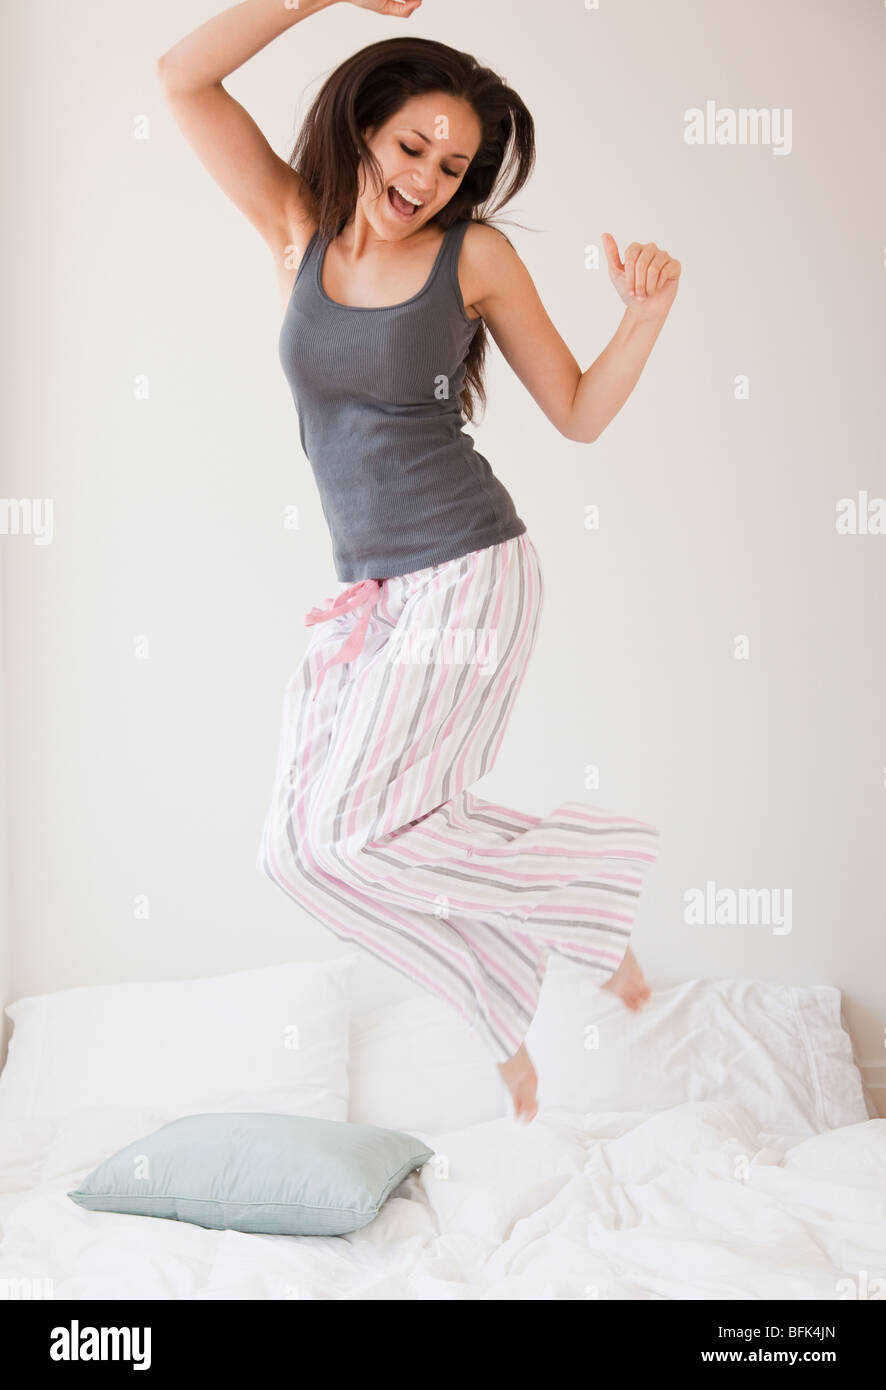 Razza mista donna saltando sul letto Foto Stock